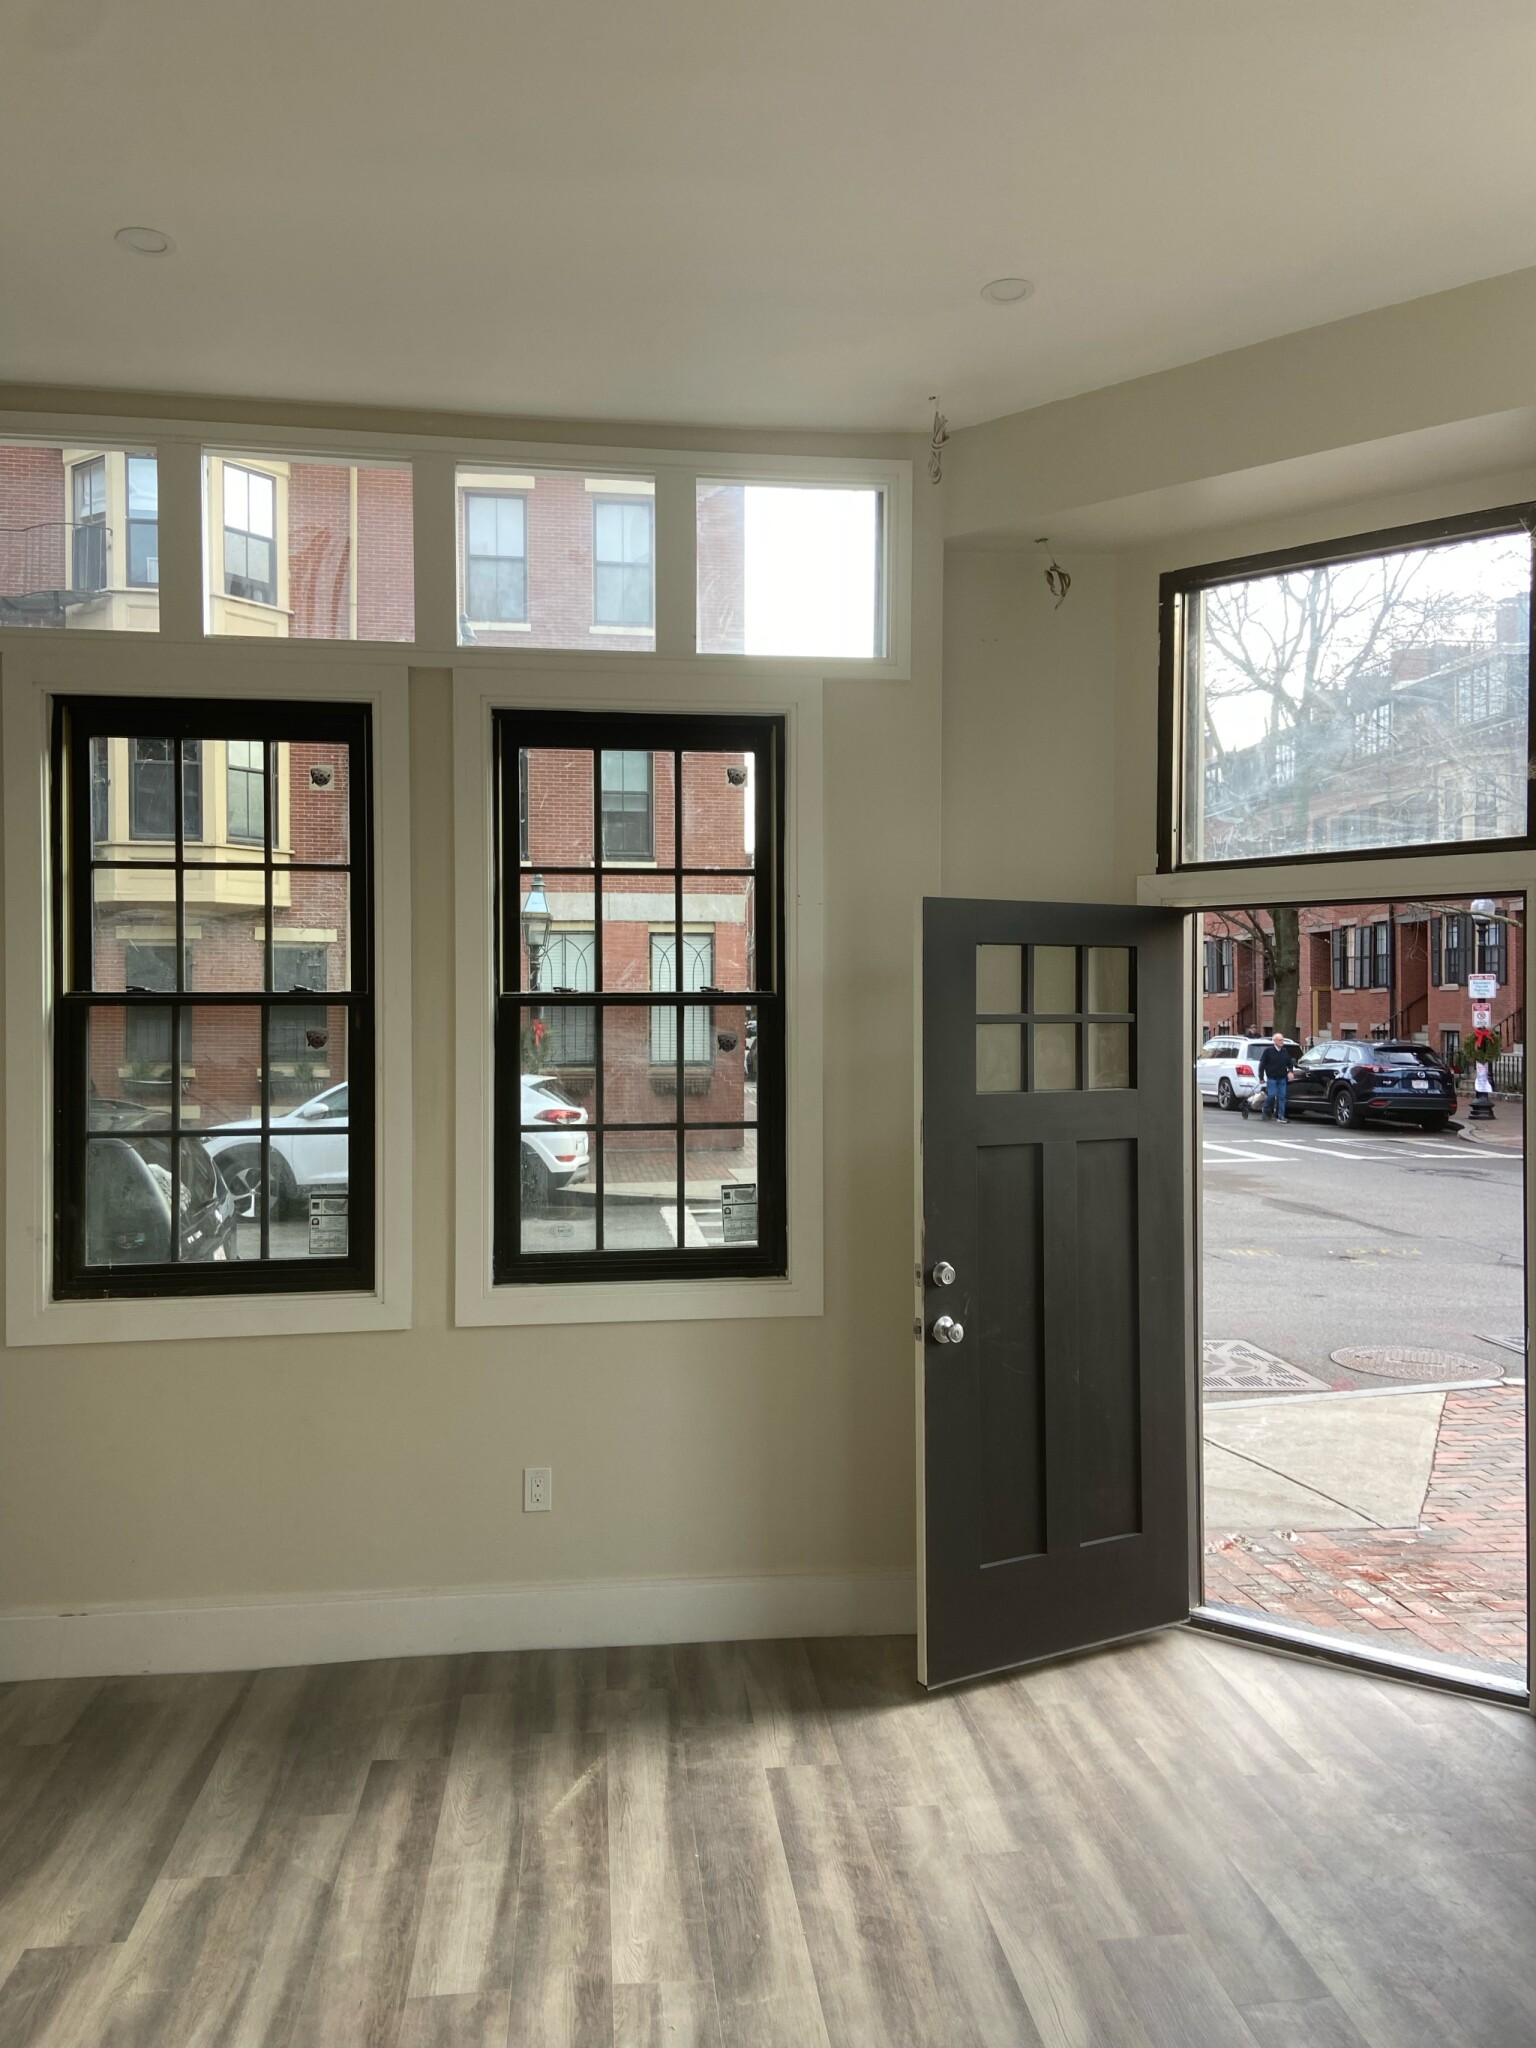 Photos of apartment on Appleton,Boston MA 02116